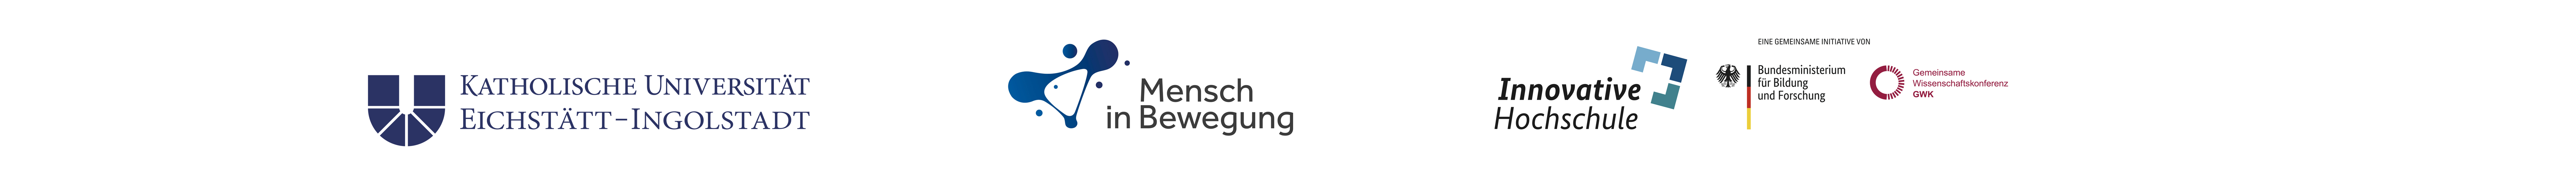 Logos of the KU, Mensch in Bewegung and Innovative Hochschulen